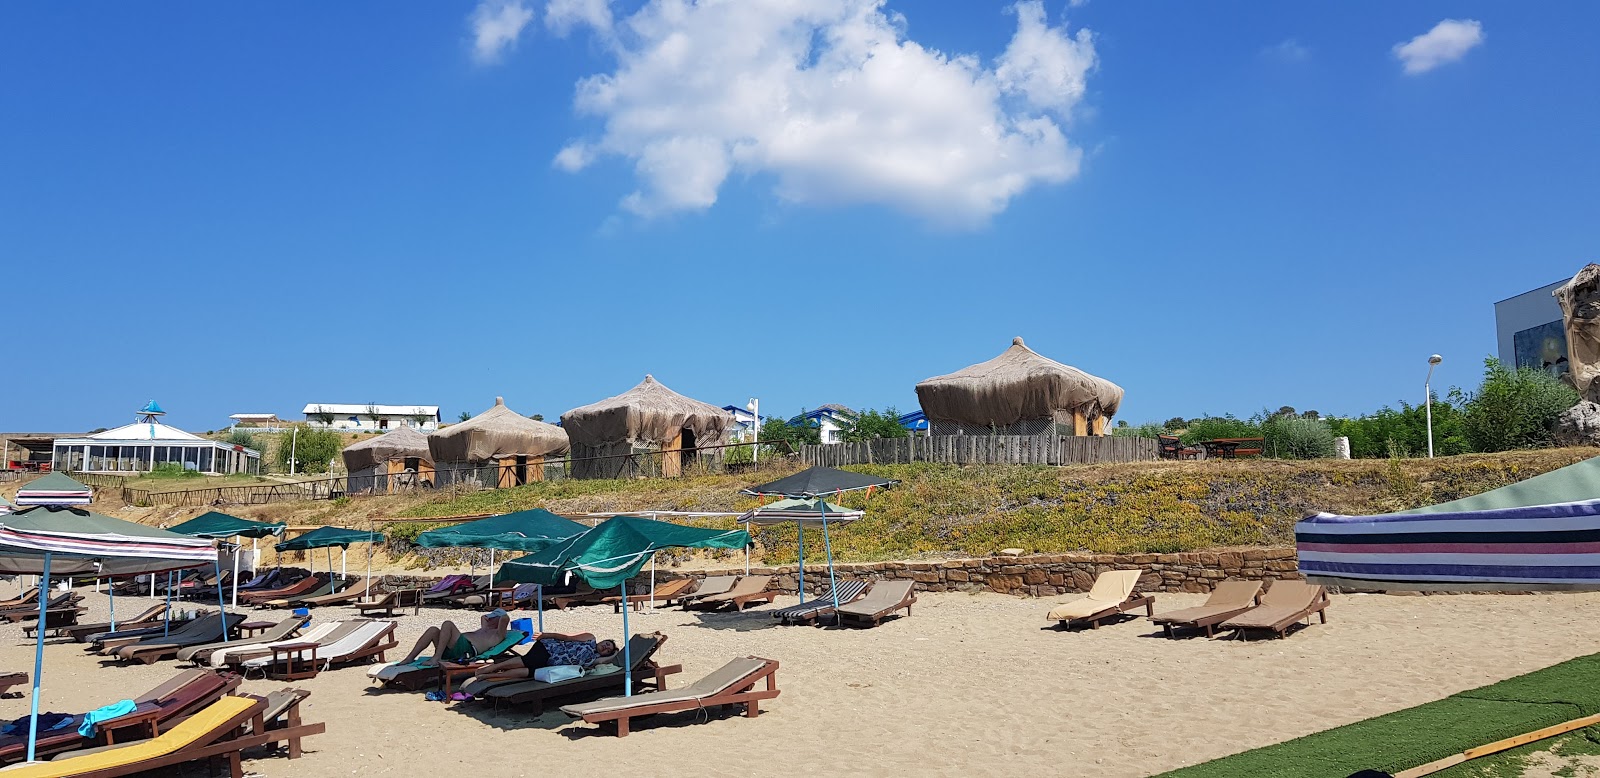 Foto de Ugurlu beach II - lugar popular entre los conocedores del relax